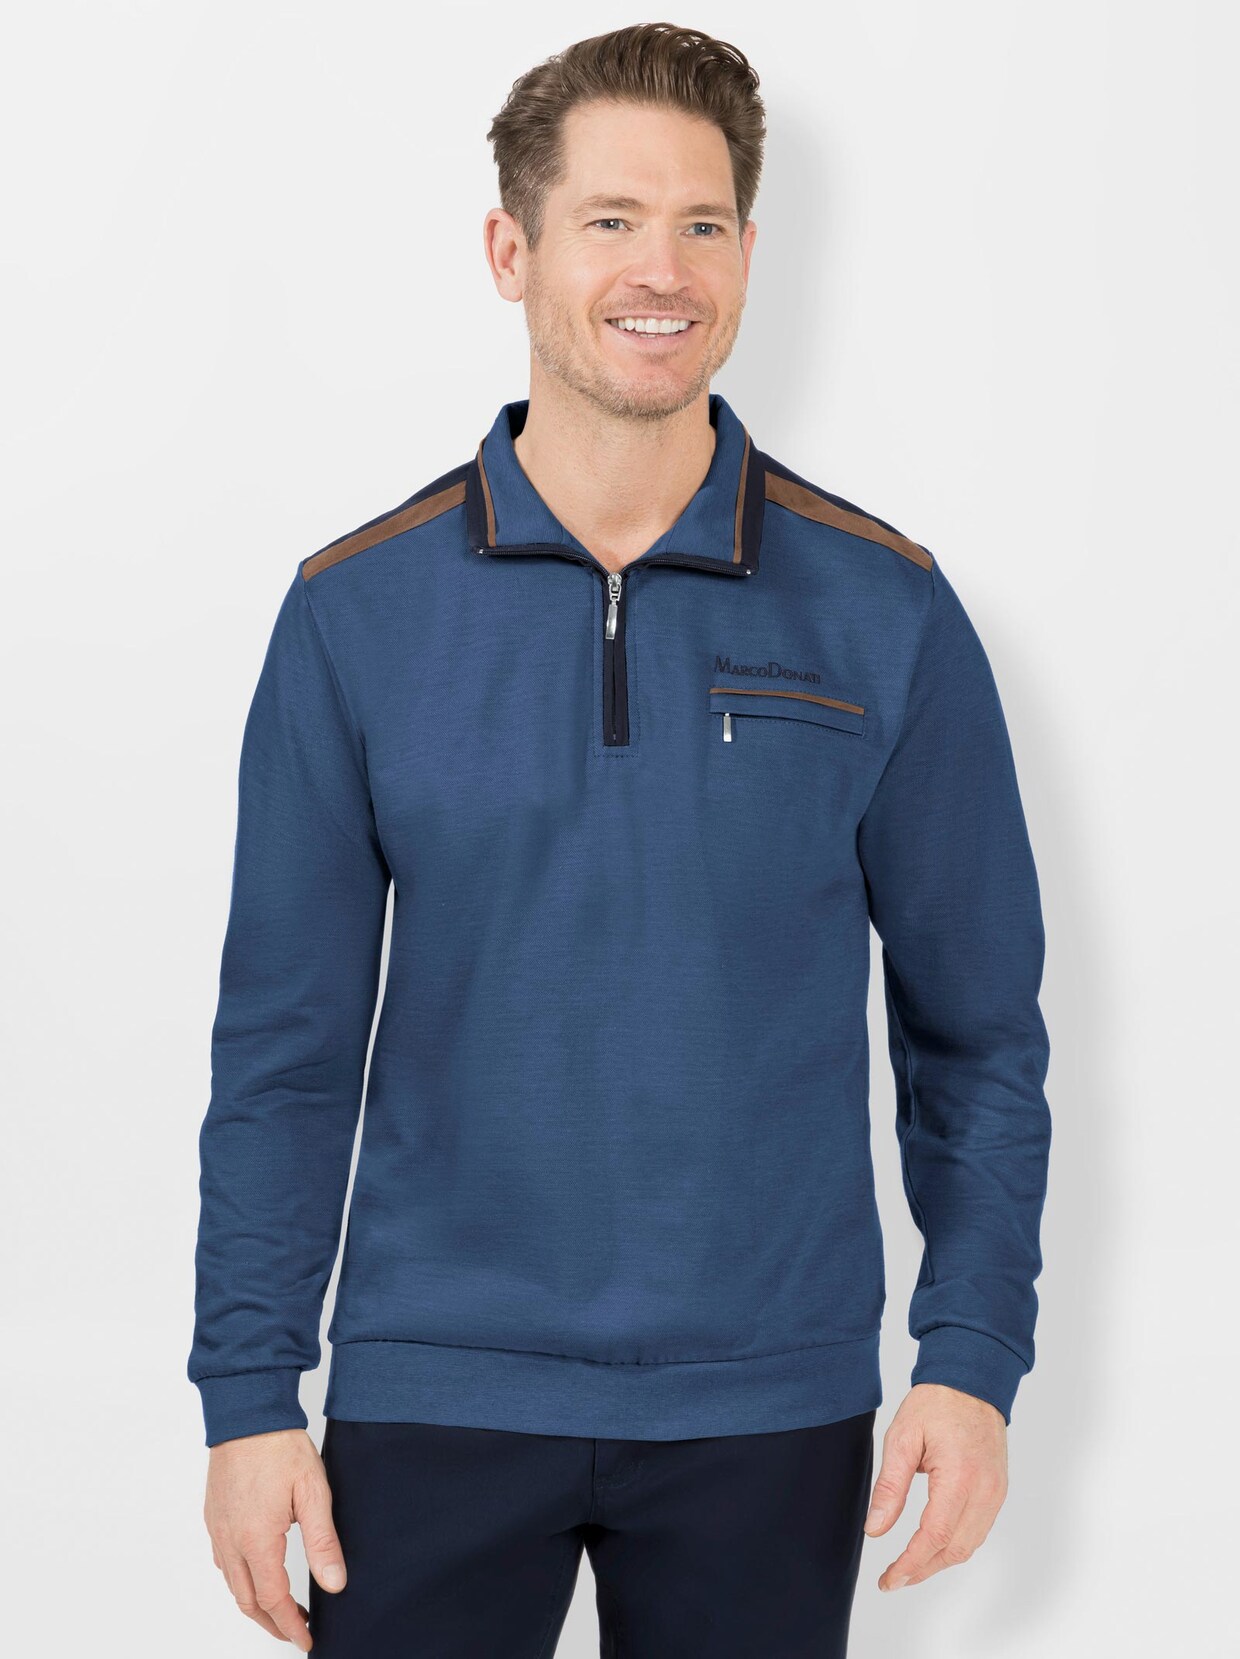 Marco Donati Sweatshirt - middenblauw